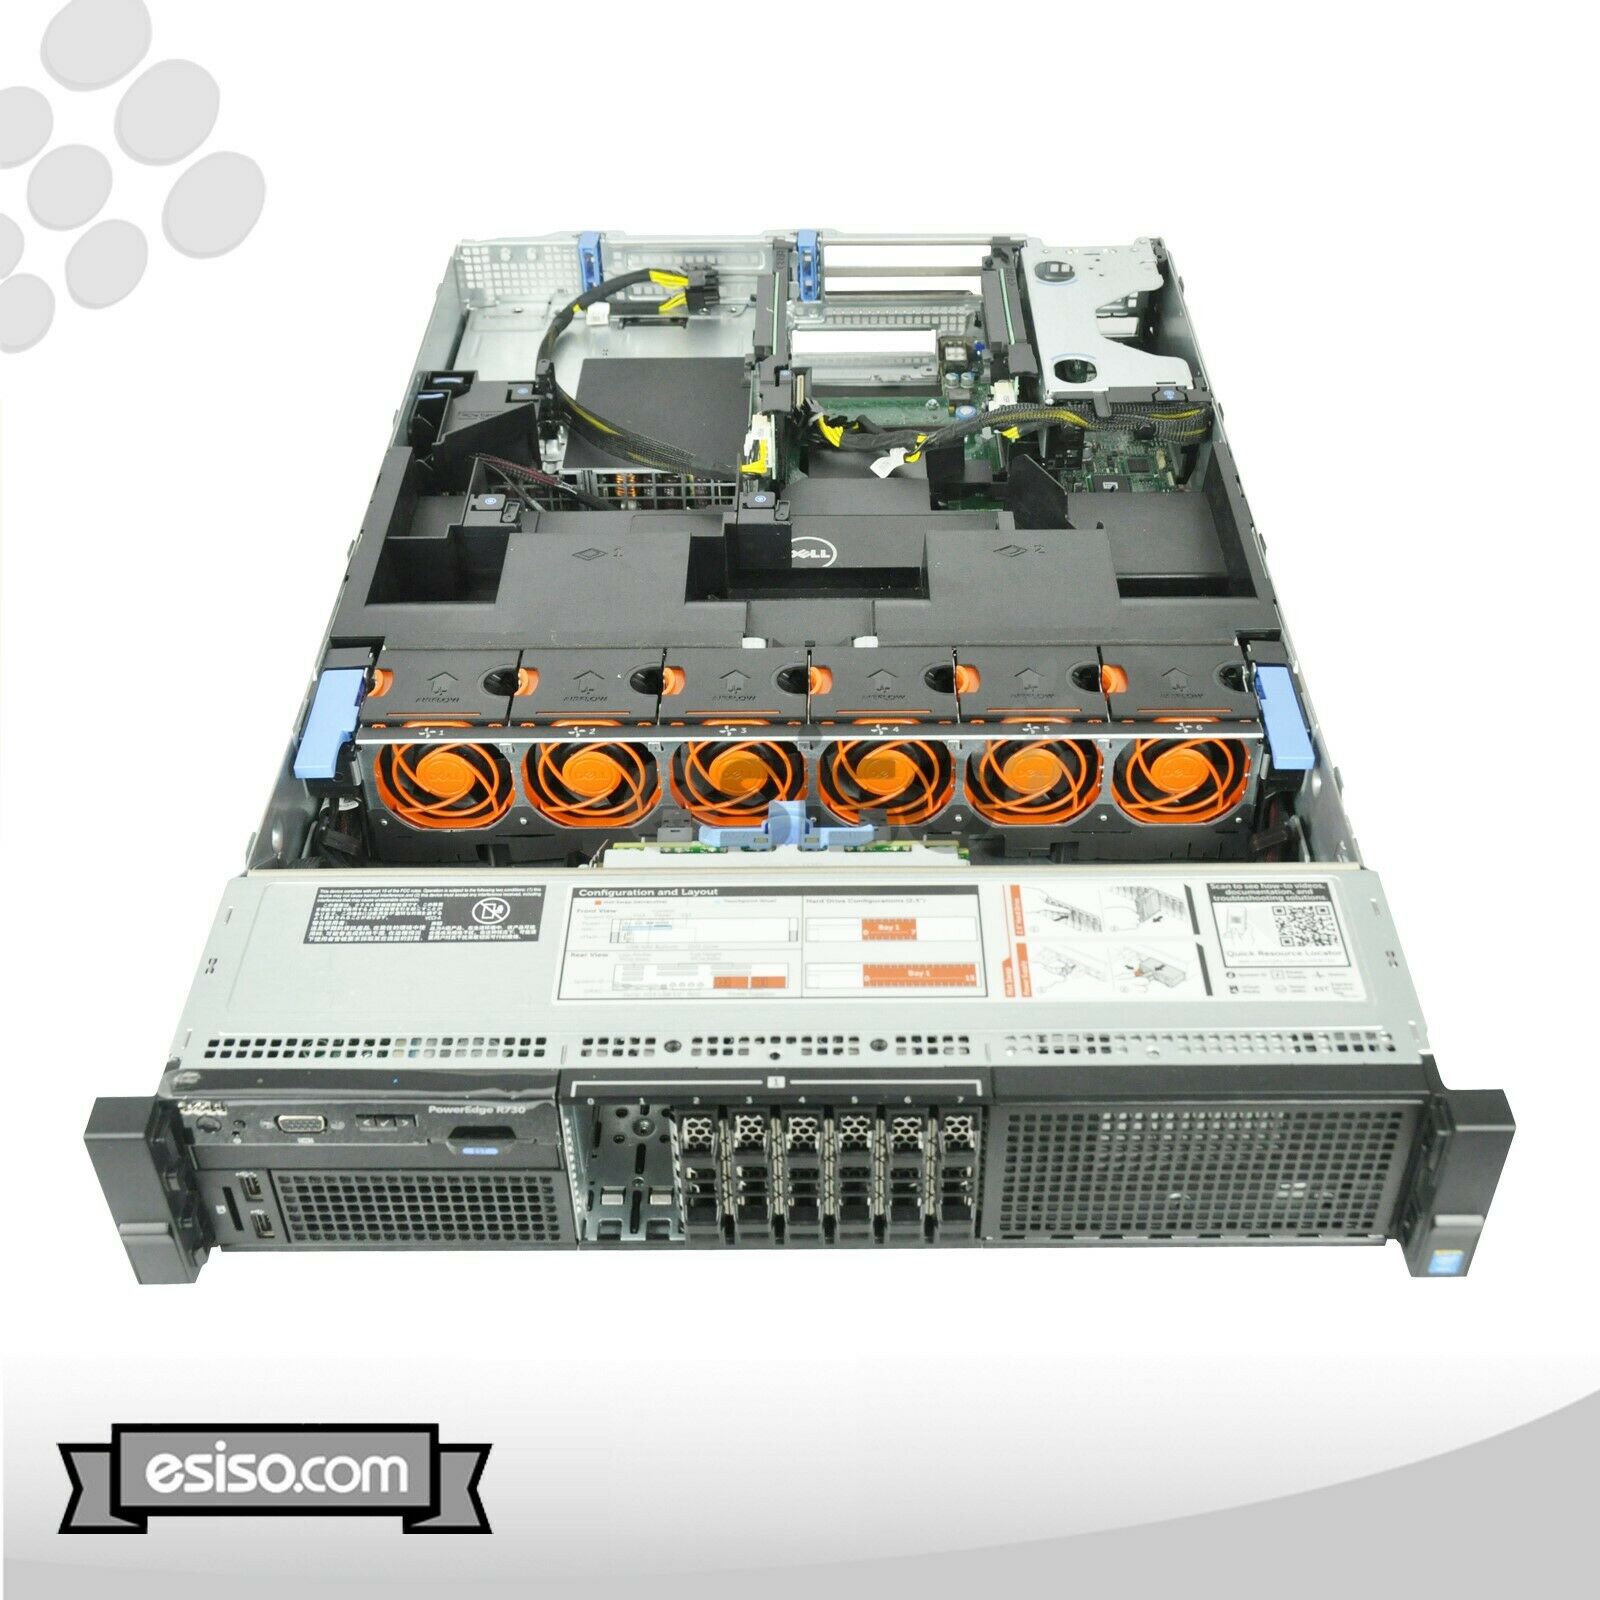 DELL POWEREDGE R730 8SFF 2x 6 CORE E5-2620v3 2.4GHz 32GB RAM H330 NO HDD